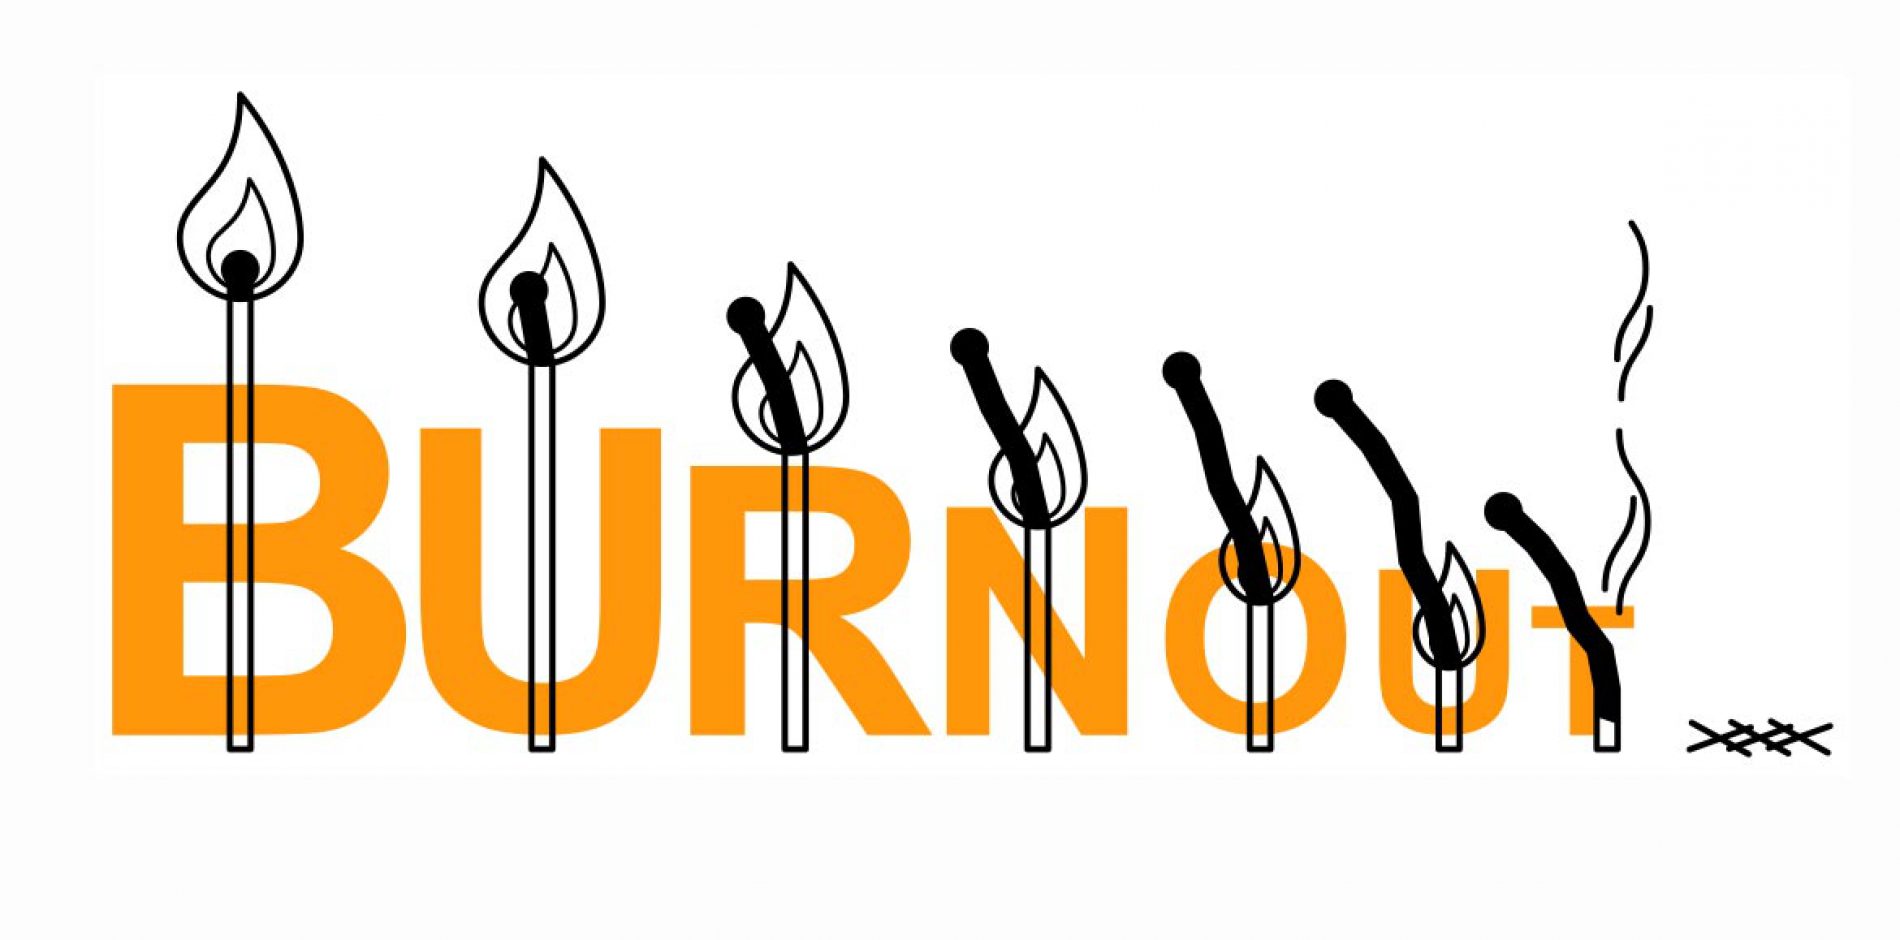 Sindrome da Burnout, quando il lavoro “brucia”: cos’è e come evitarla